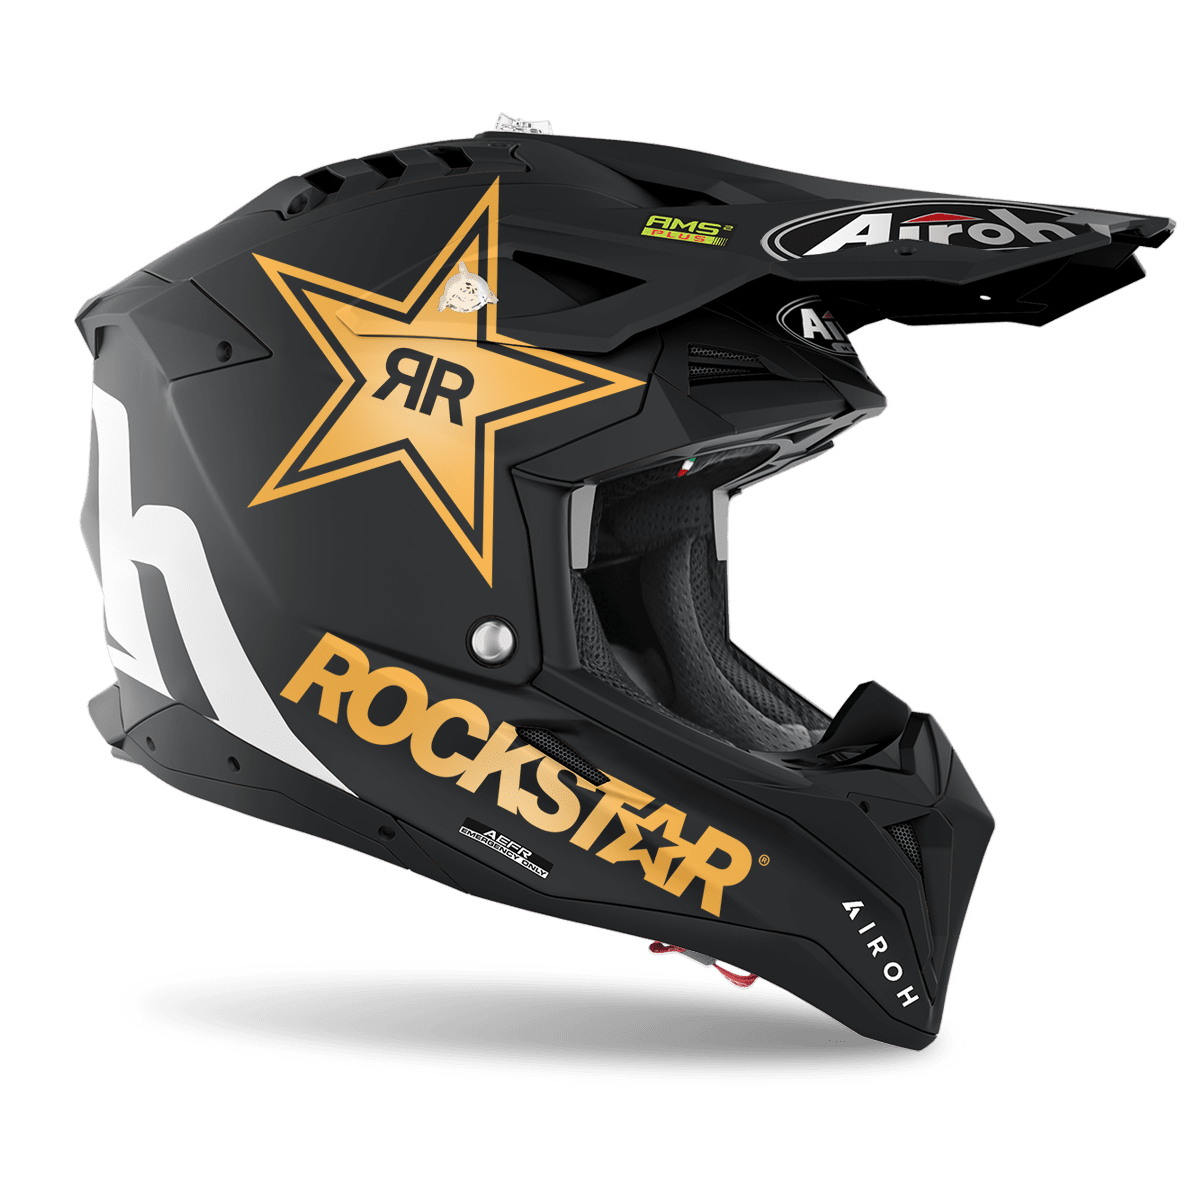 Los mejores cascos para motocross 2022 fox Airoh Aviator 3 2022 2 Los mejores cascos de motocross y enduro de 2022